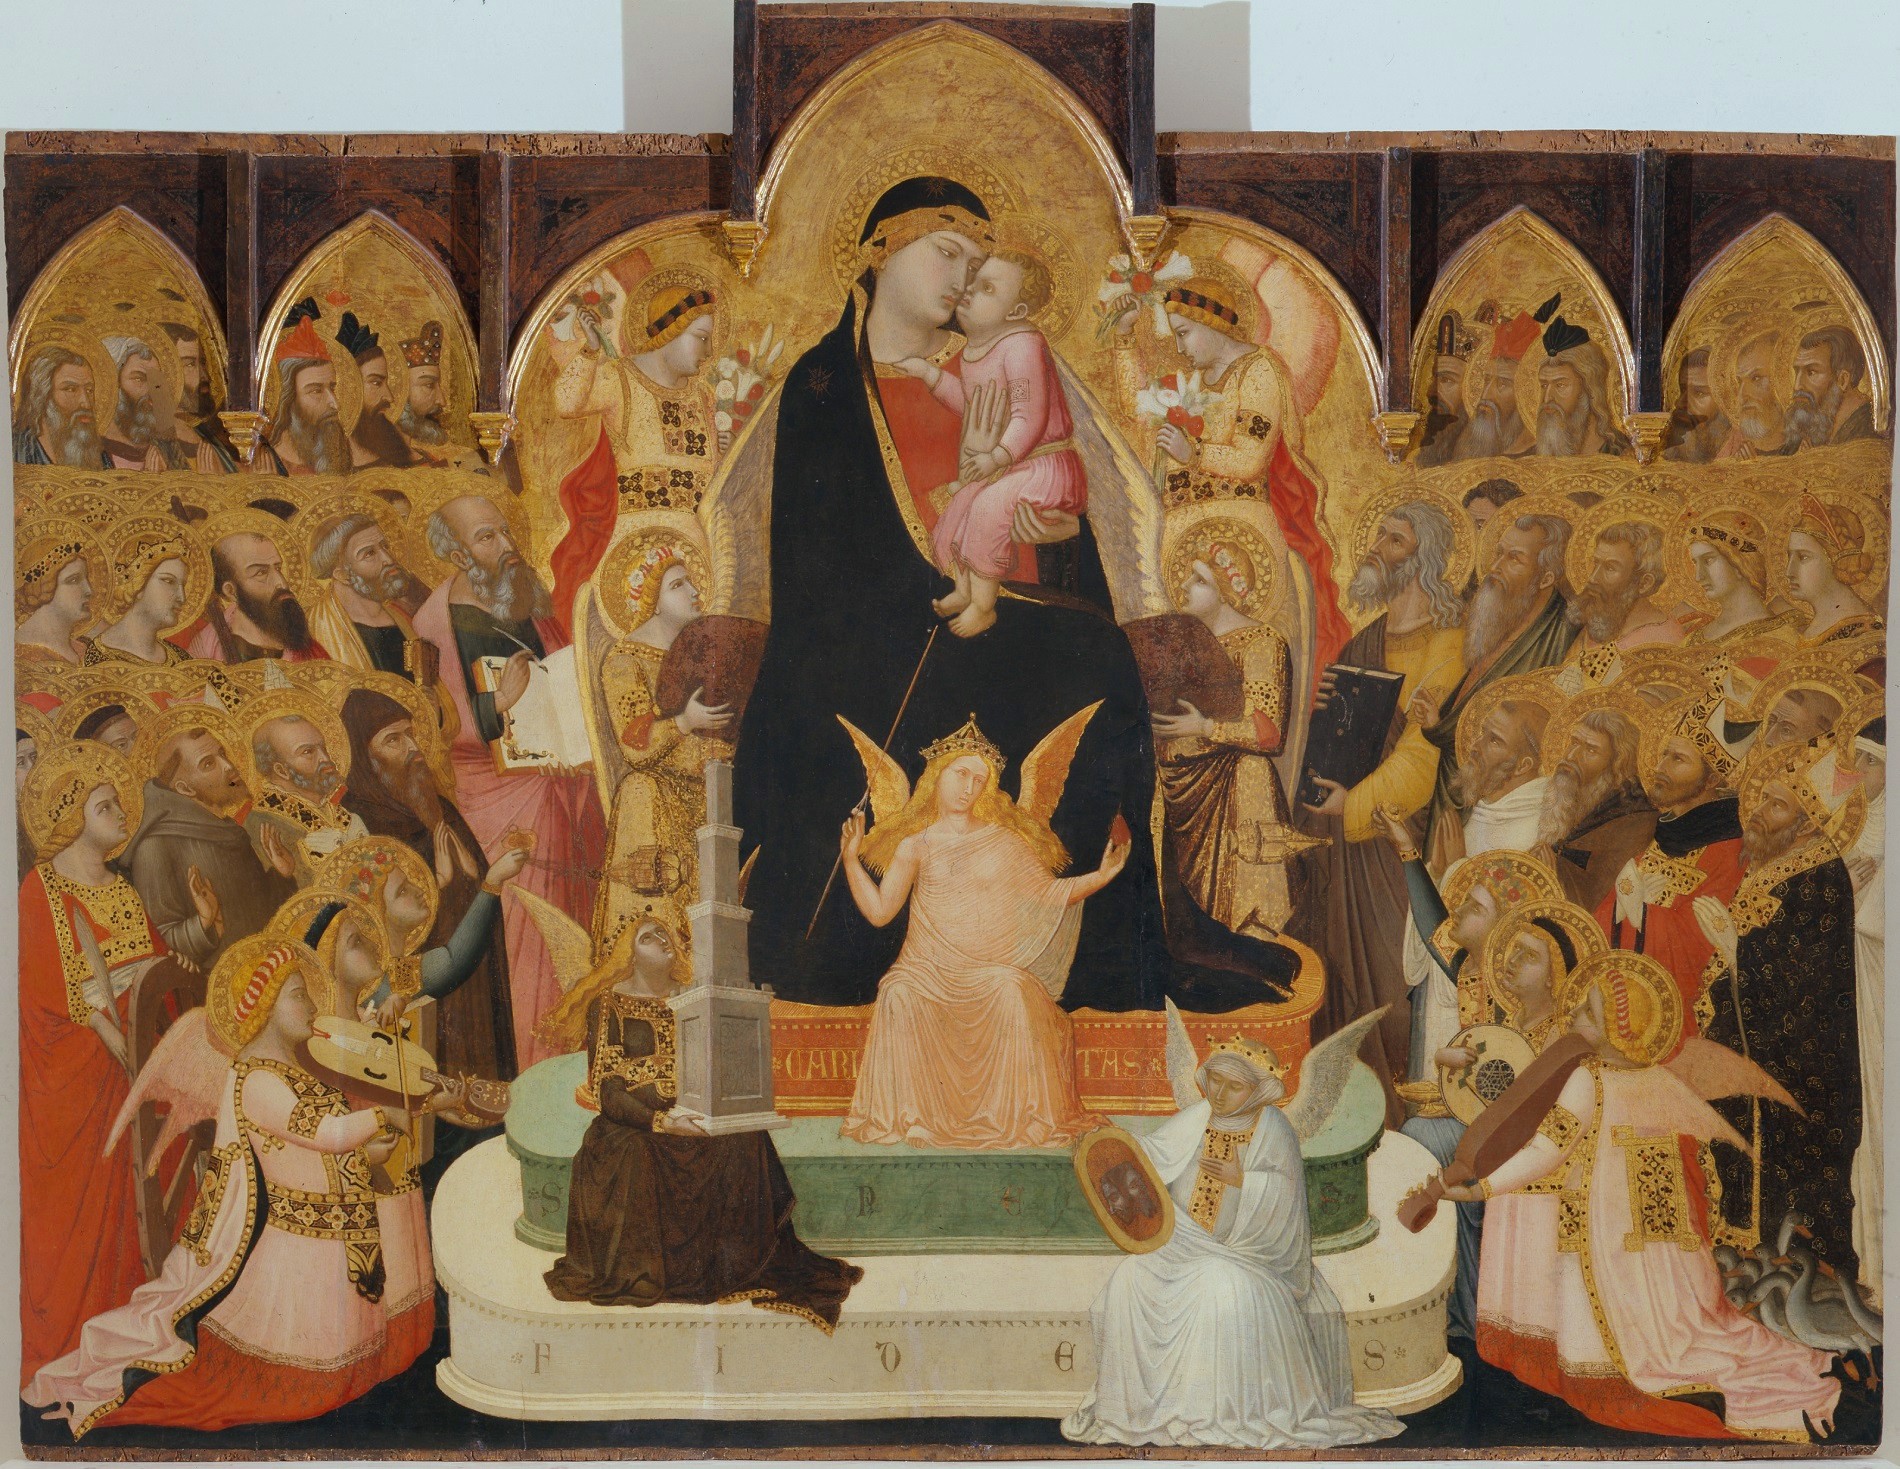 Maestà di Ambrogio Lorenzetti